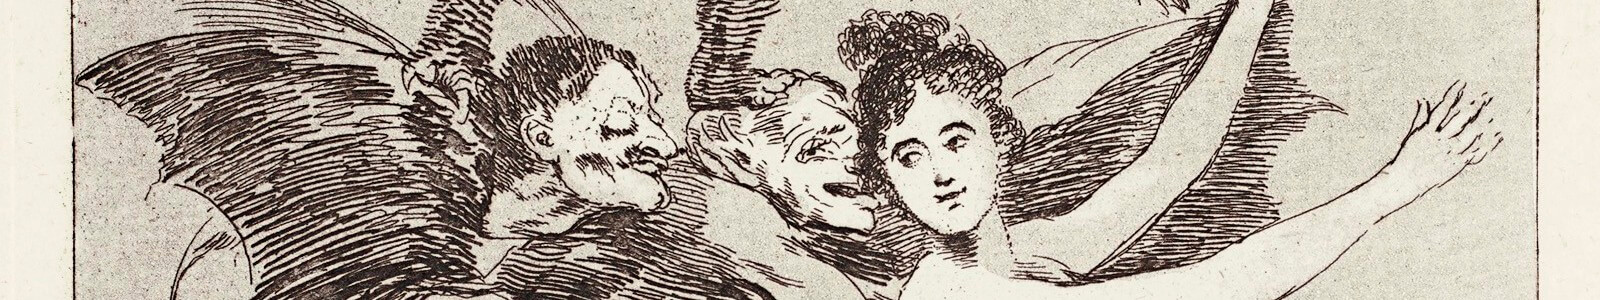 Le sommeil de la raison: Los Caprichos de Francisco Goya